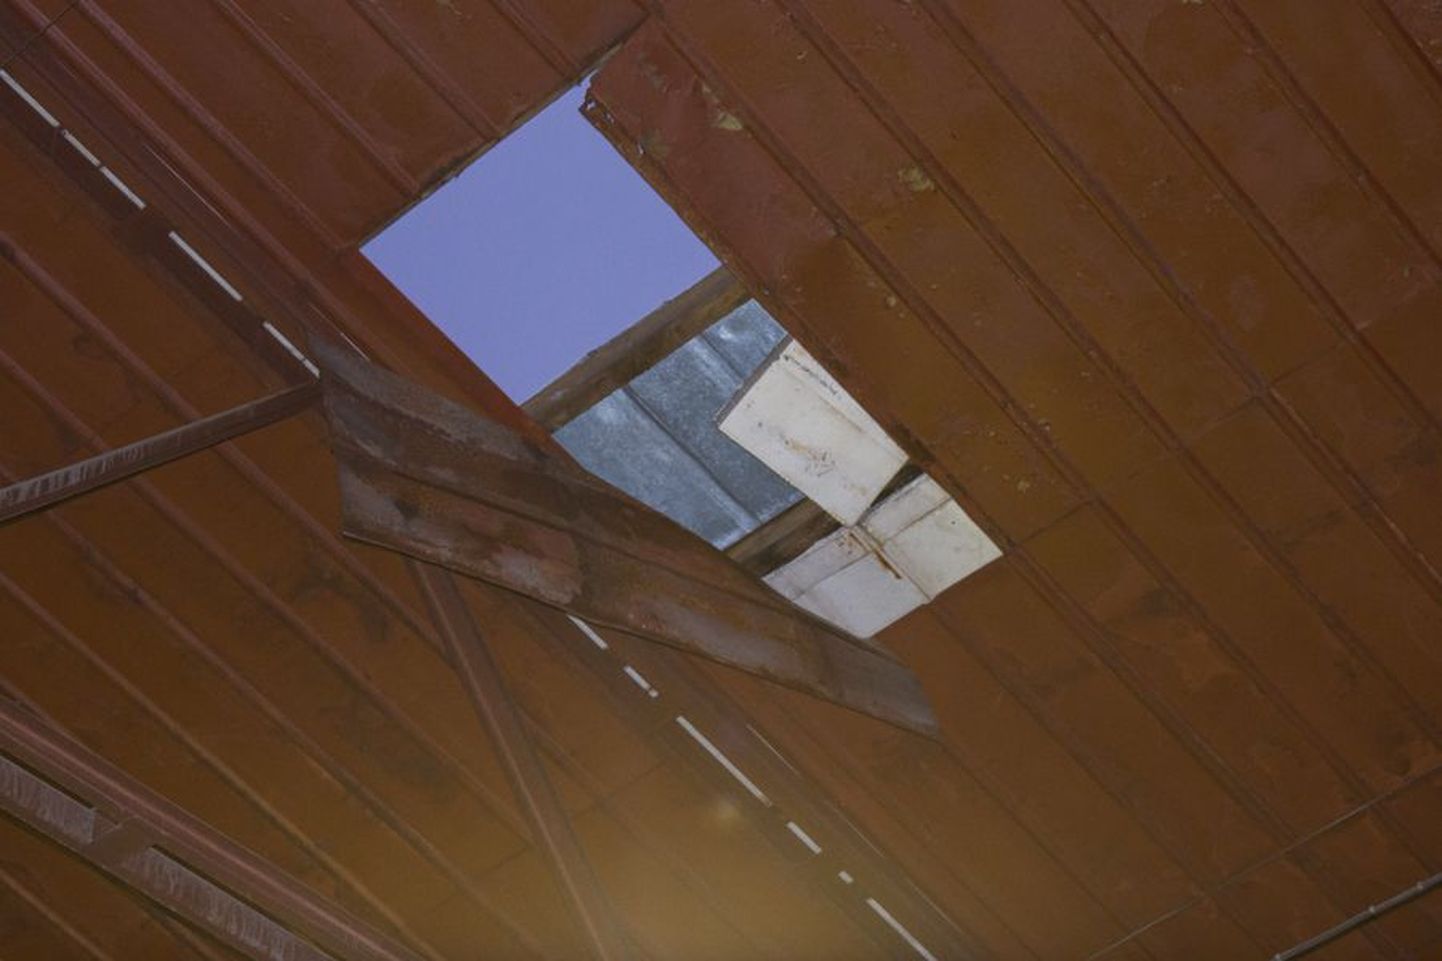 Angaari katust katnud plekk andis järele ning töömees kukkus kõrgelt betoonist põrandale.